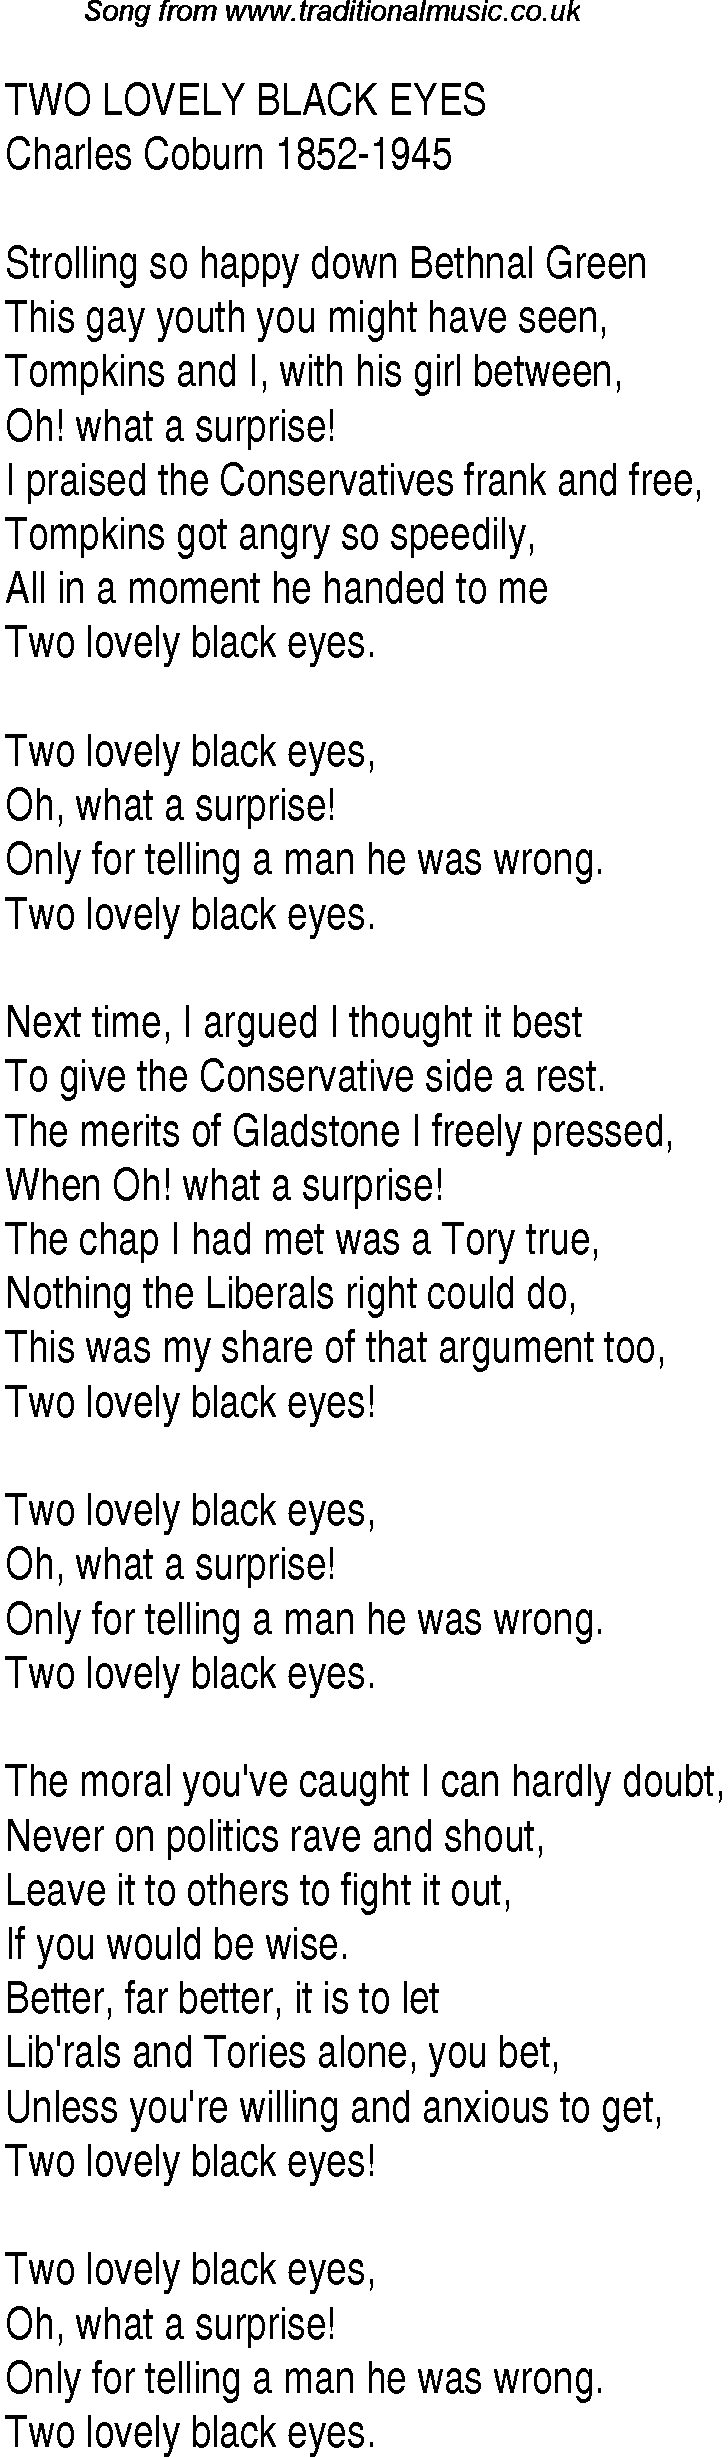 1940s top songs - lyrics for Two Lovely Black Eyes